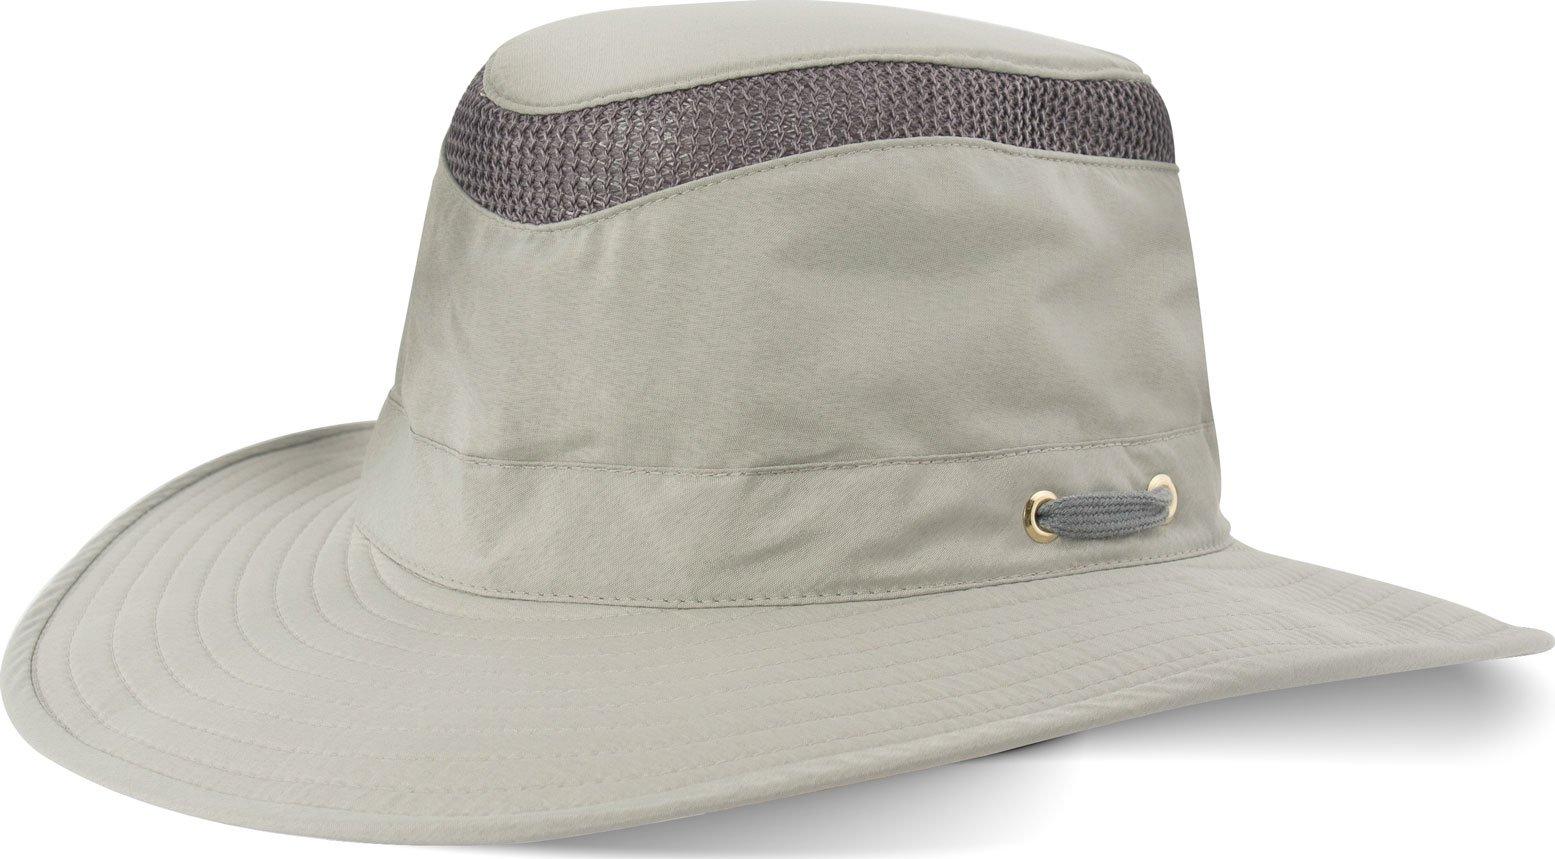  Tilley LTM6 AIRFLO Broad Brim Hat, Grey